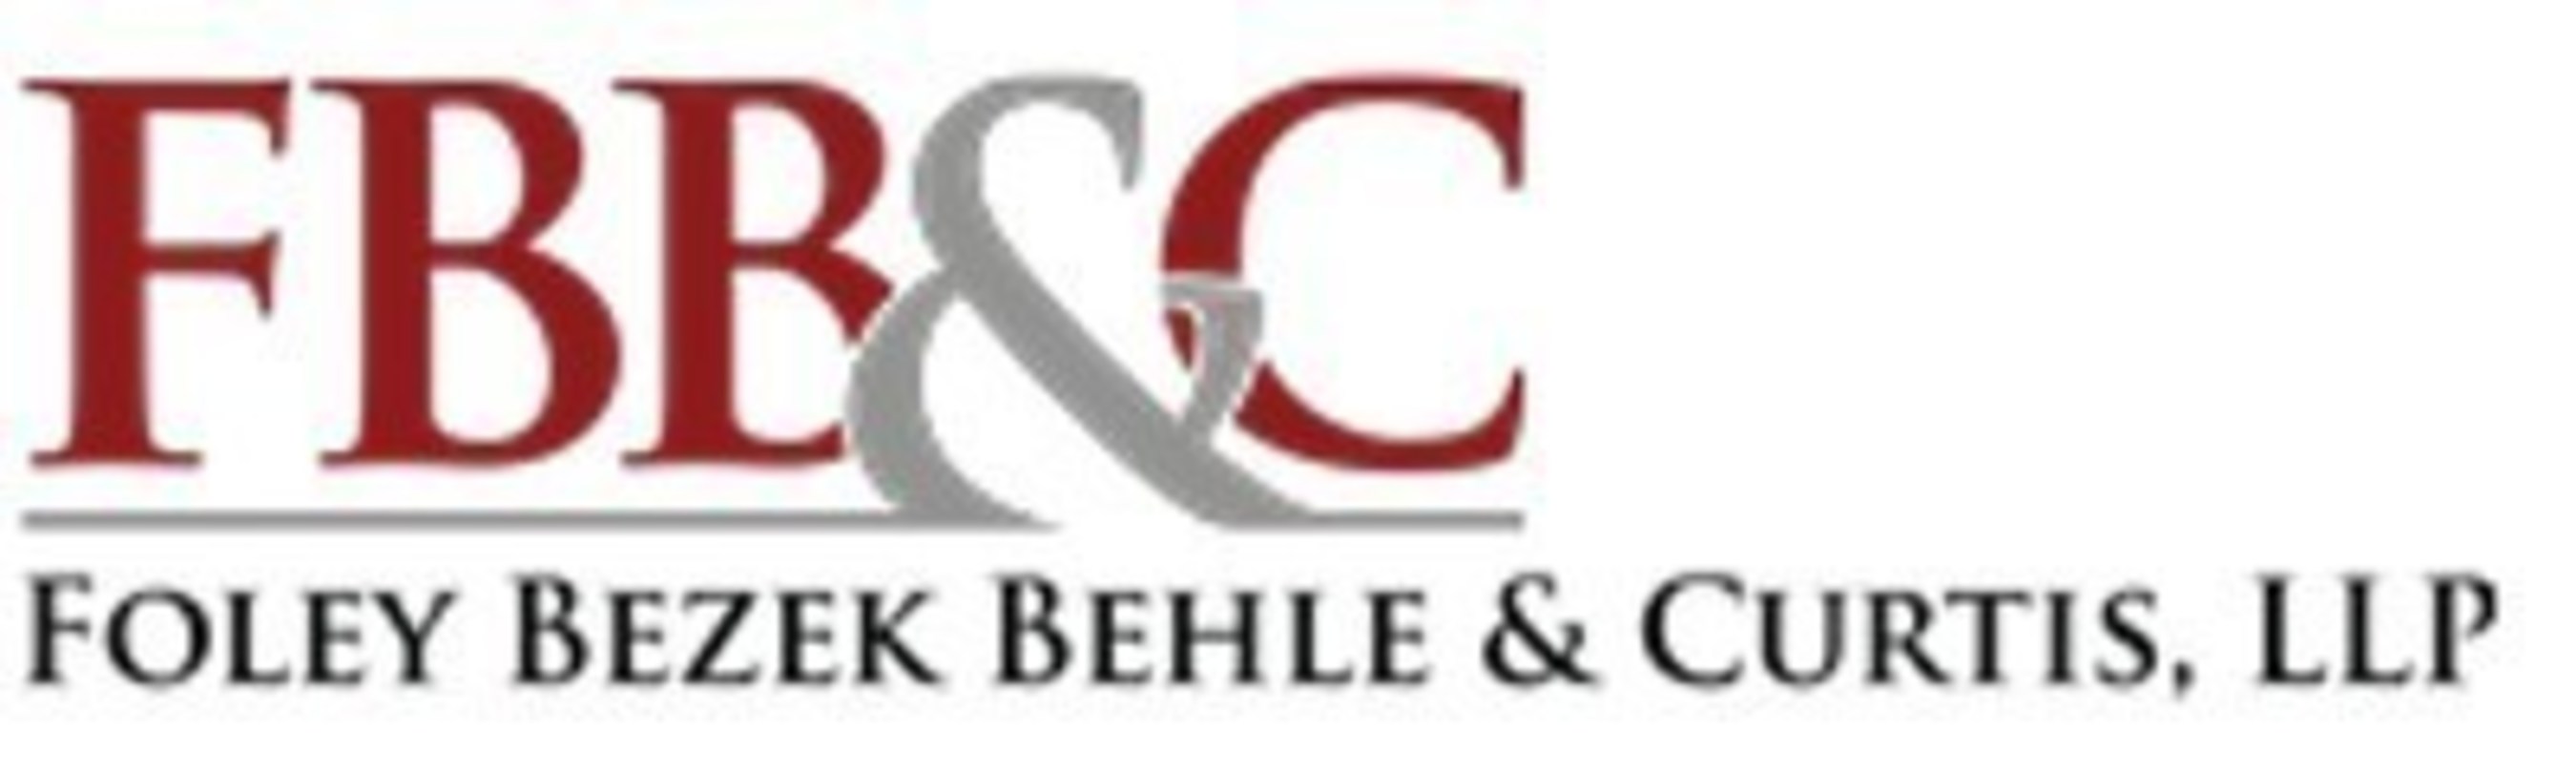 Foley Bezek Behle & Curtis LLP Logo